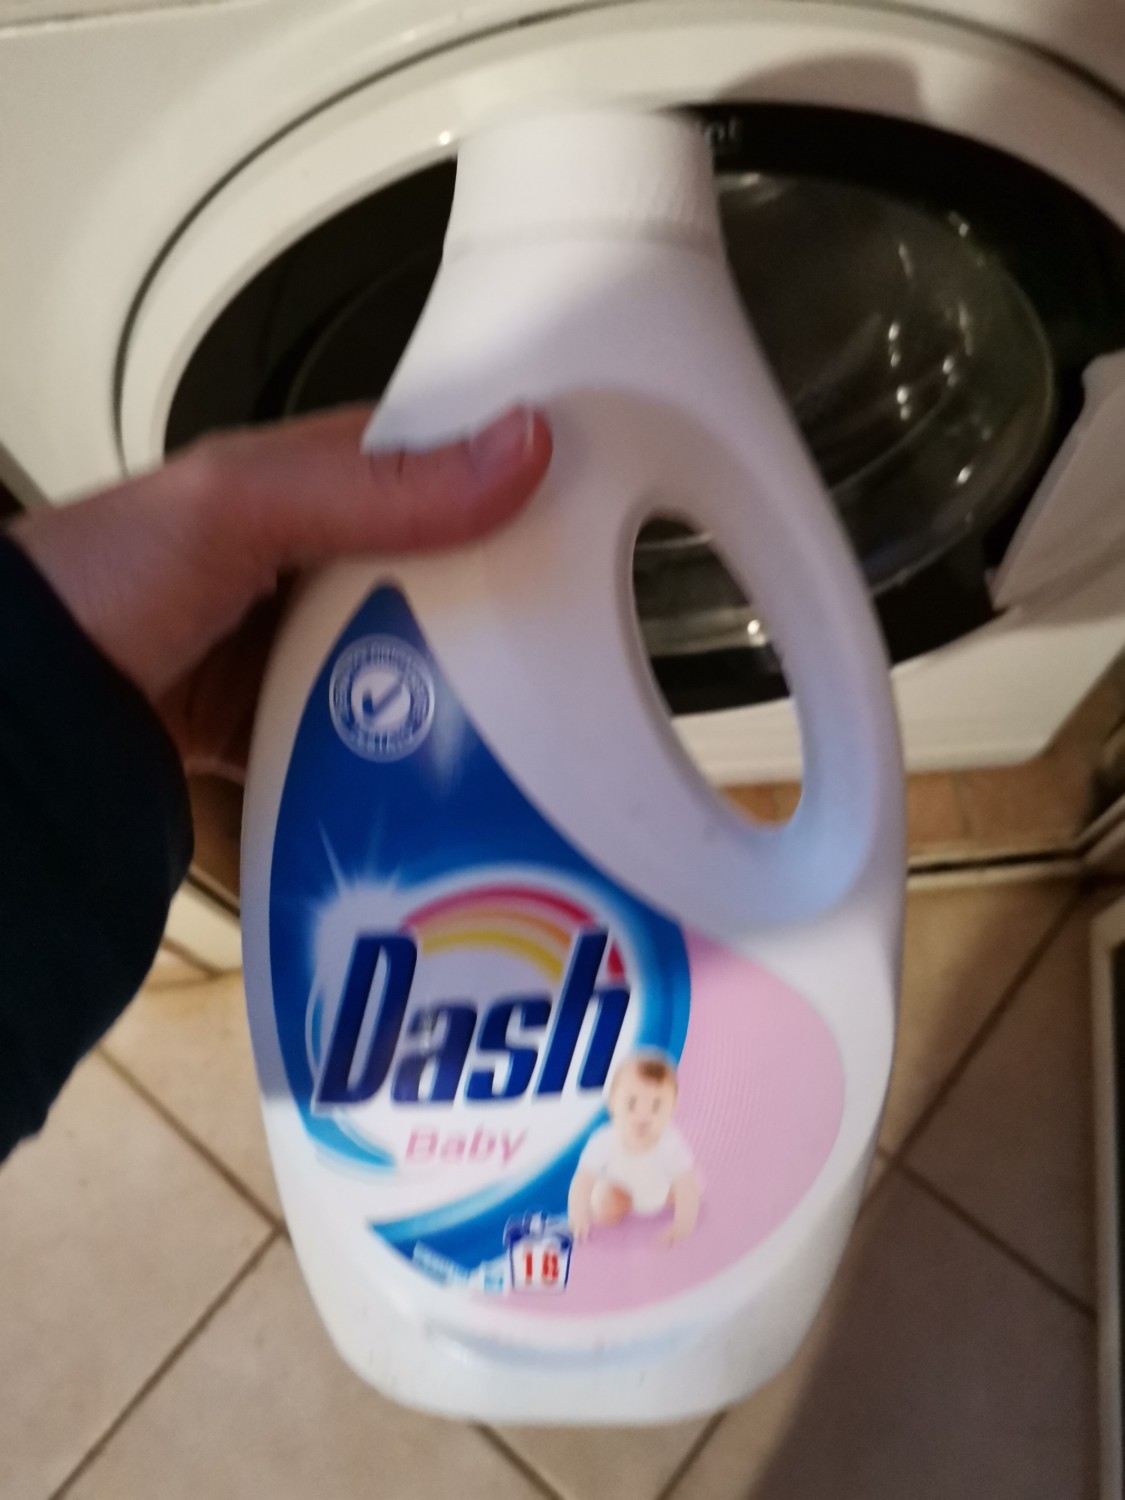 Dash Baby - Lavaggio Indumenti Bambini 990ml  Detergente Delicato per  Abbigliamento dei Piccoli